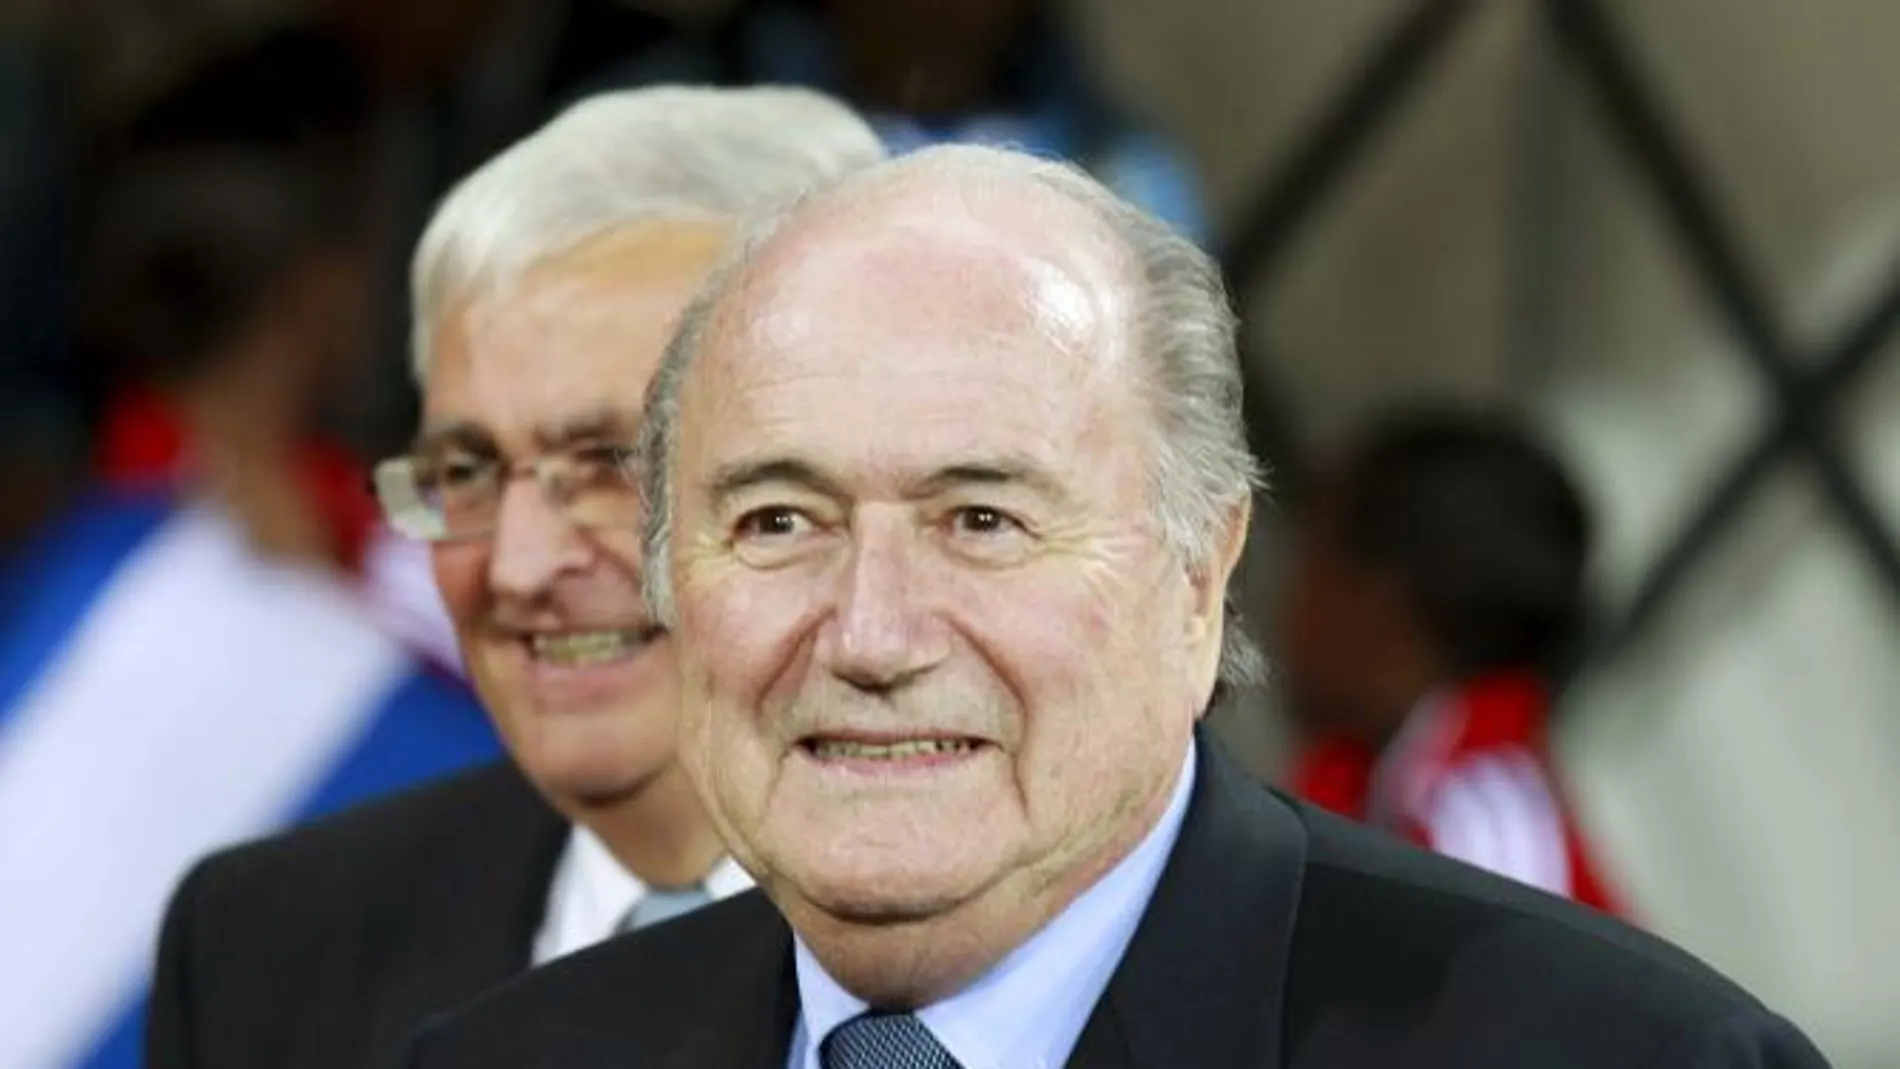 Joseph Blatter, ex presidente de la FIFA